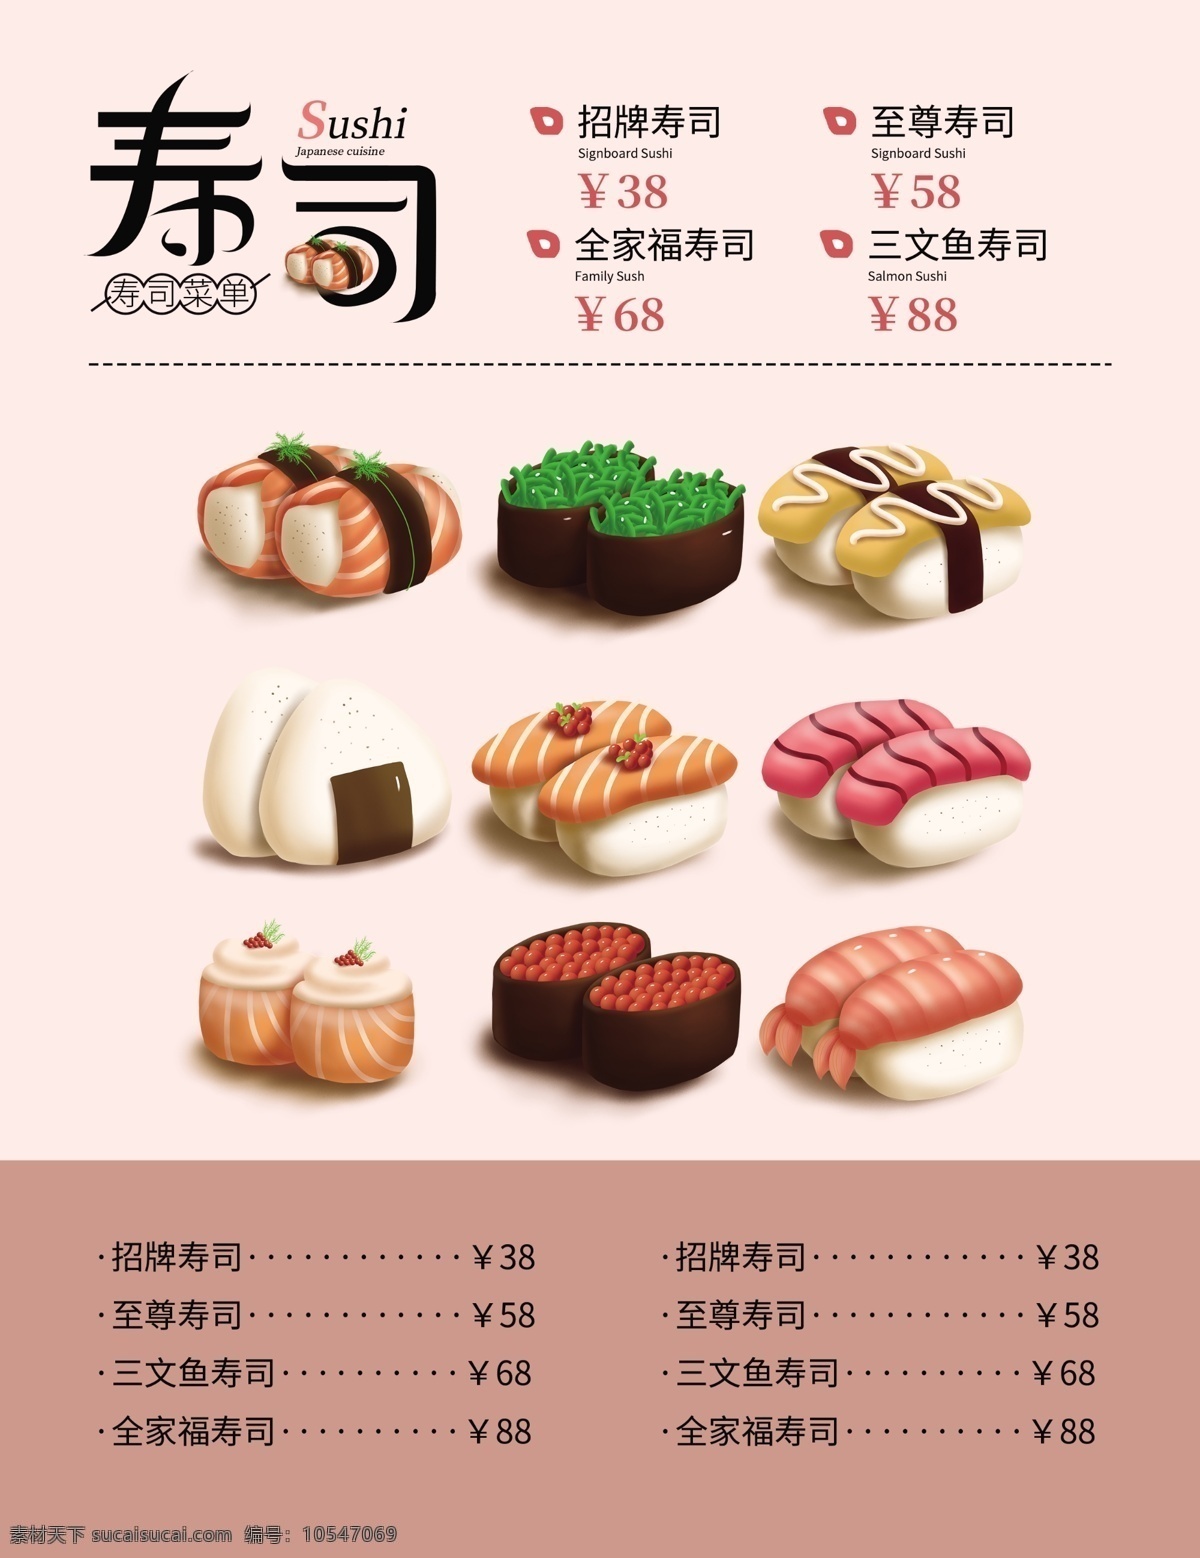 原创 简约 菜单 日本 传统 寿司 料理 粉黑 促销 会员日 享受 大餐 菜谱设计